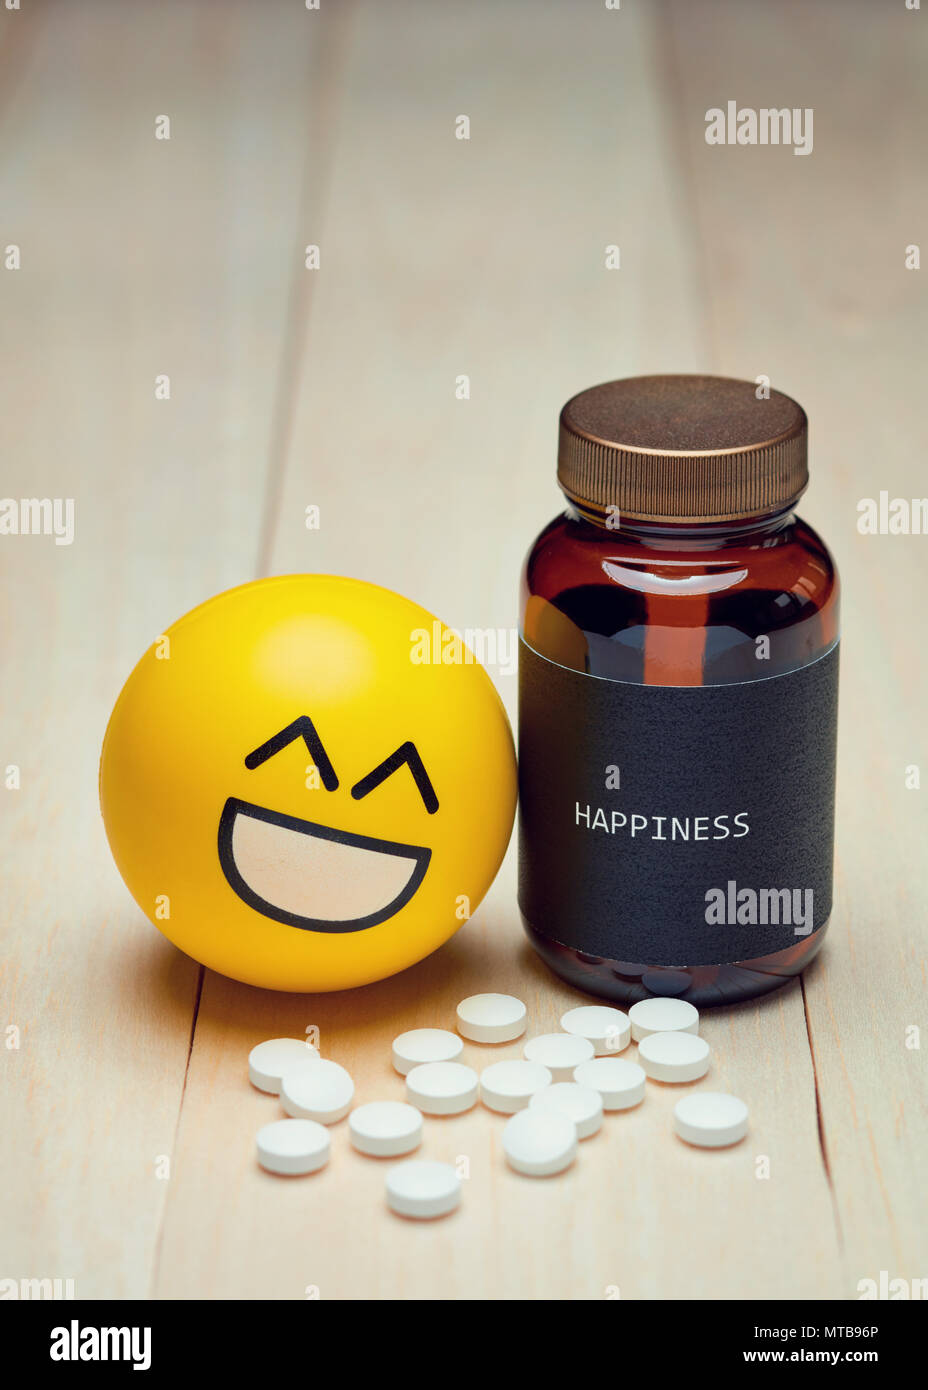 Antidepressiva und Glück. Gelbe lächeln Emoji neben einer Droge Container mit einer Black Label geschrieben Glück auf. Weiße Pillen auf den Tisch. Stockfoto